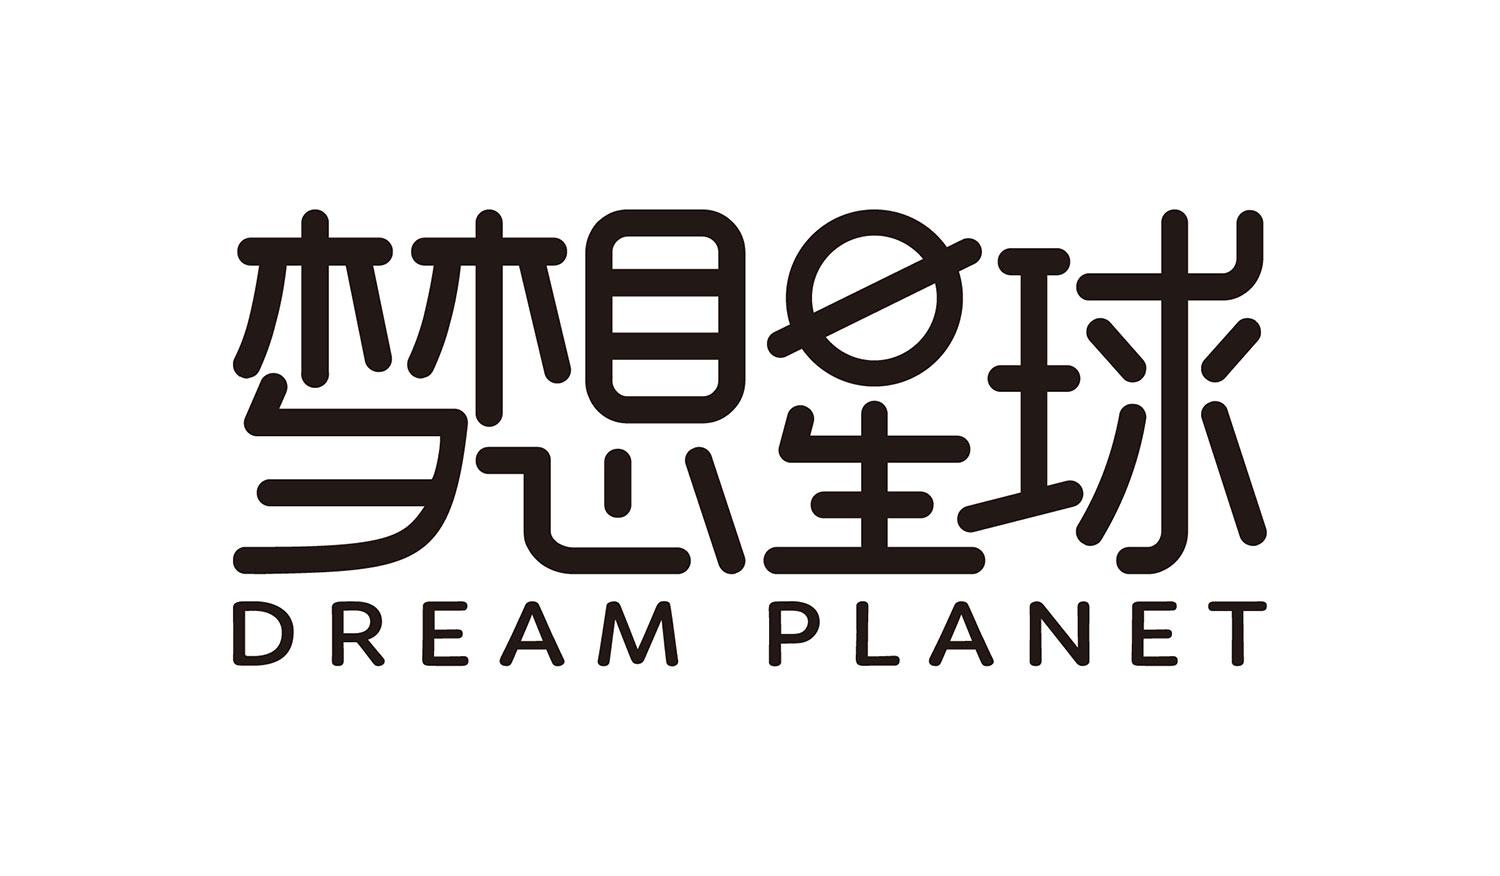 商标文字梦想星球 dream planet商标注册号 31597931,商标申请人杭州